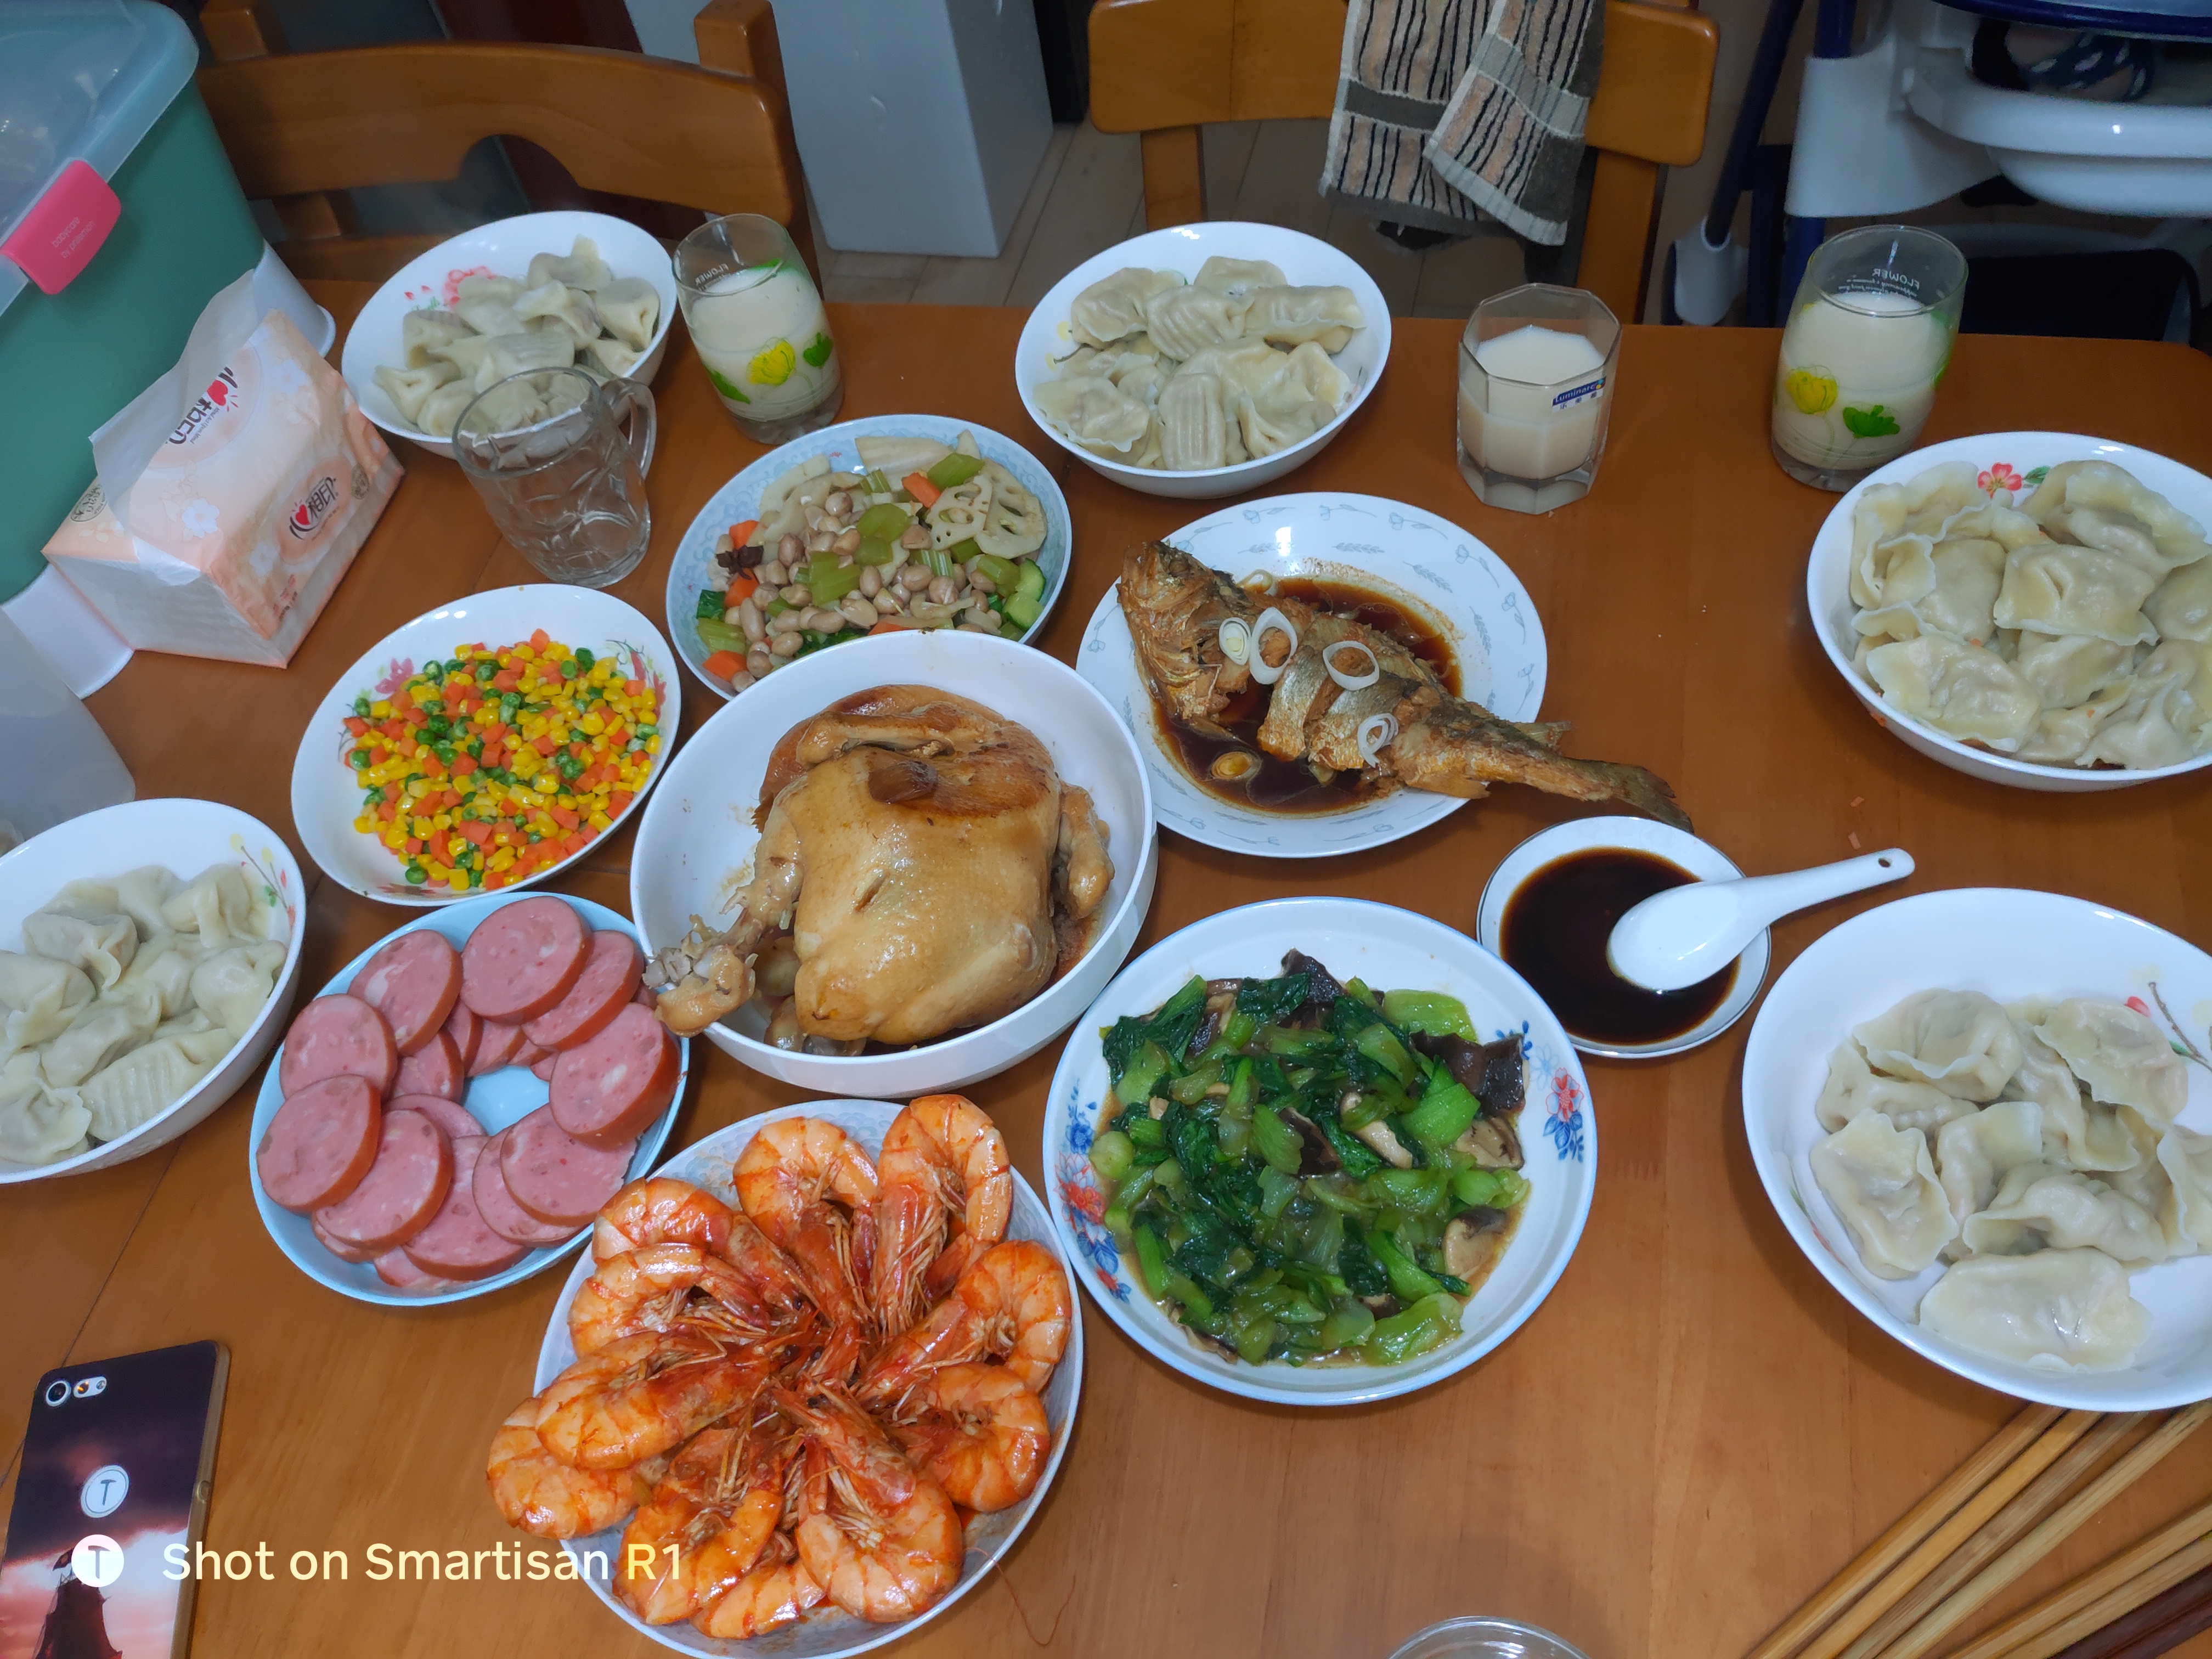 农村小情侣第一次在北京过年,饭菜再美也挡不住对家的思念